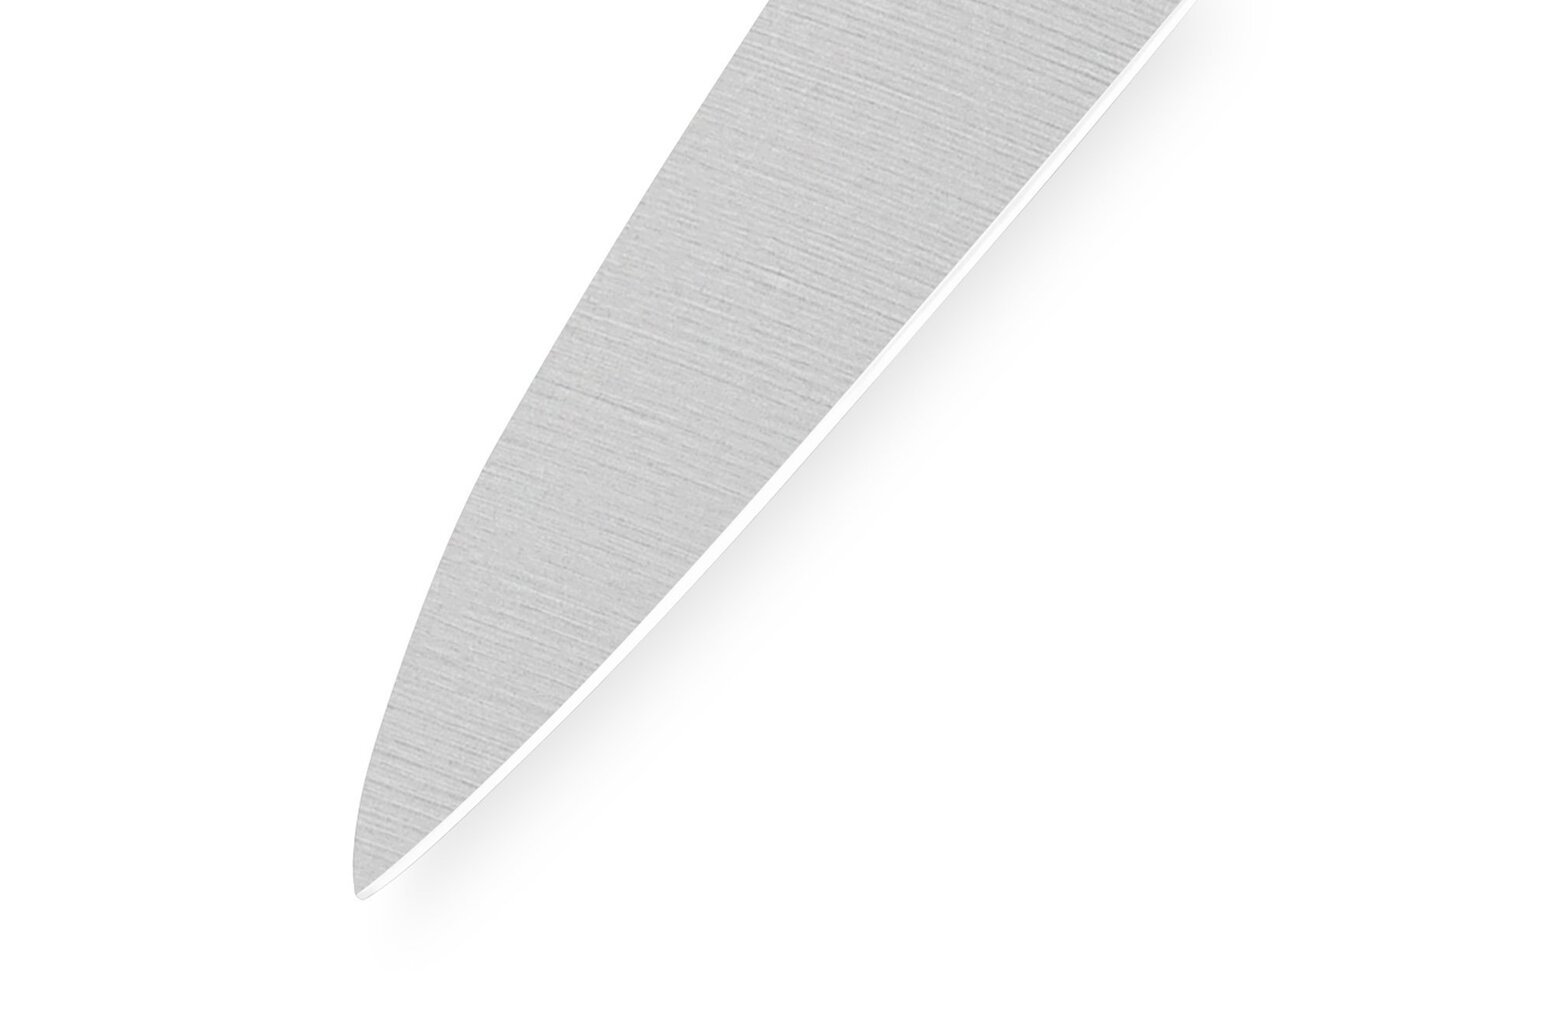 Samura Harakiri universalus peilis, 12 cm kaina ir informacija | Peiliai ir jų priedai | pigu.lt